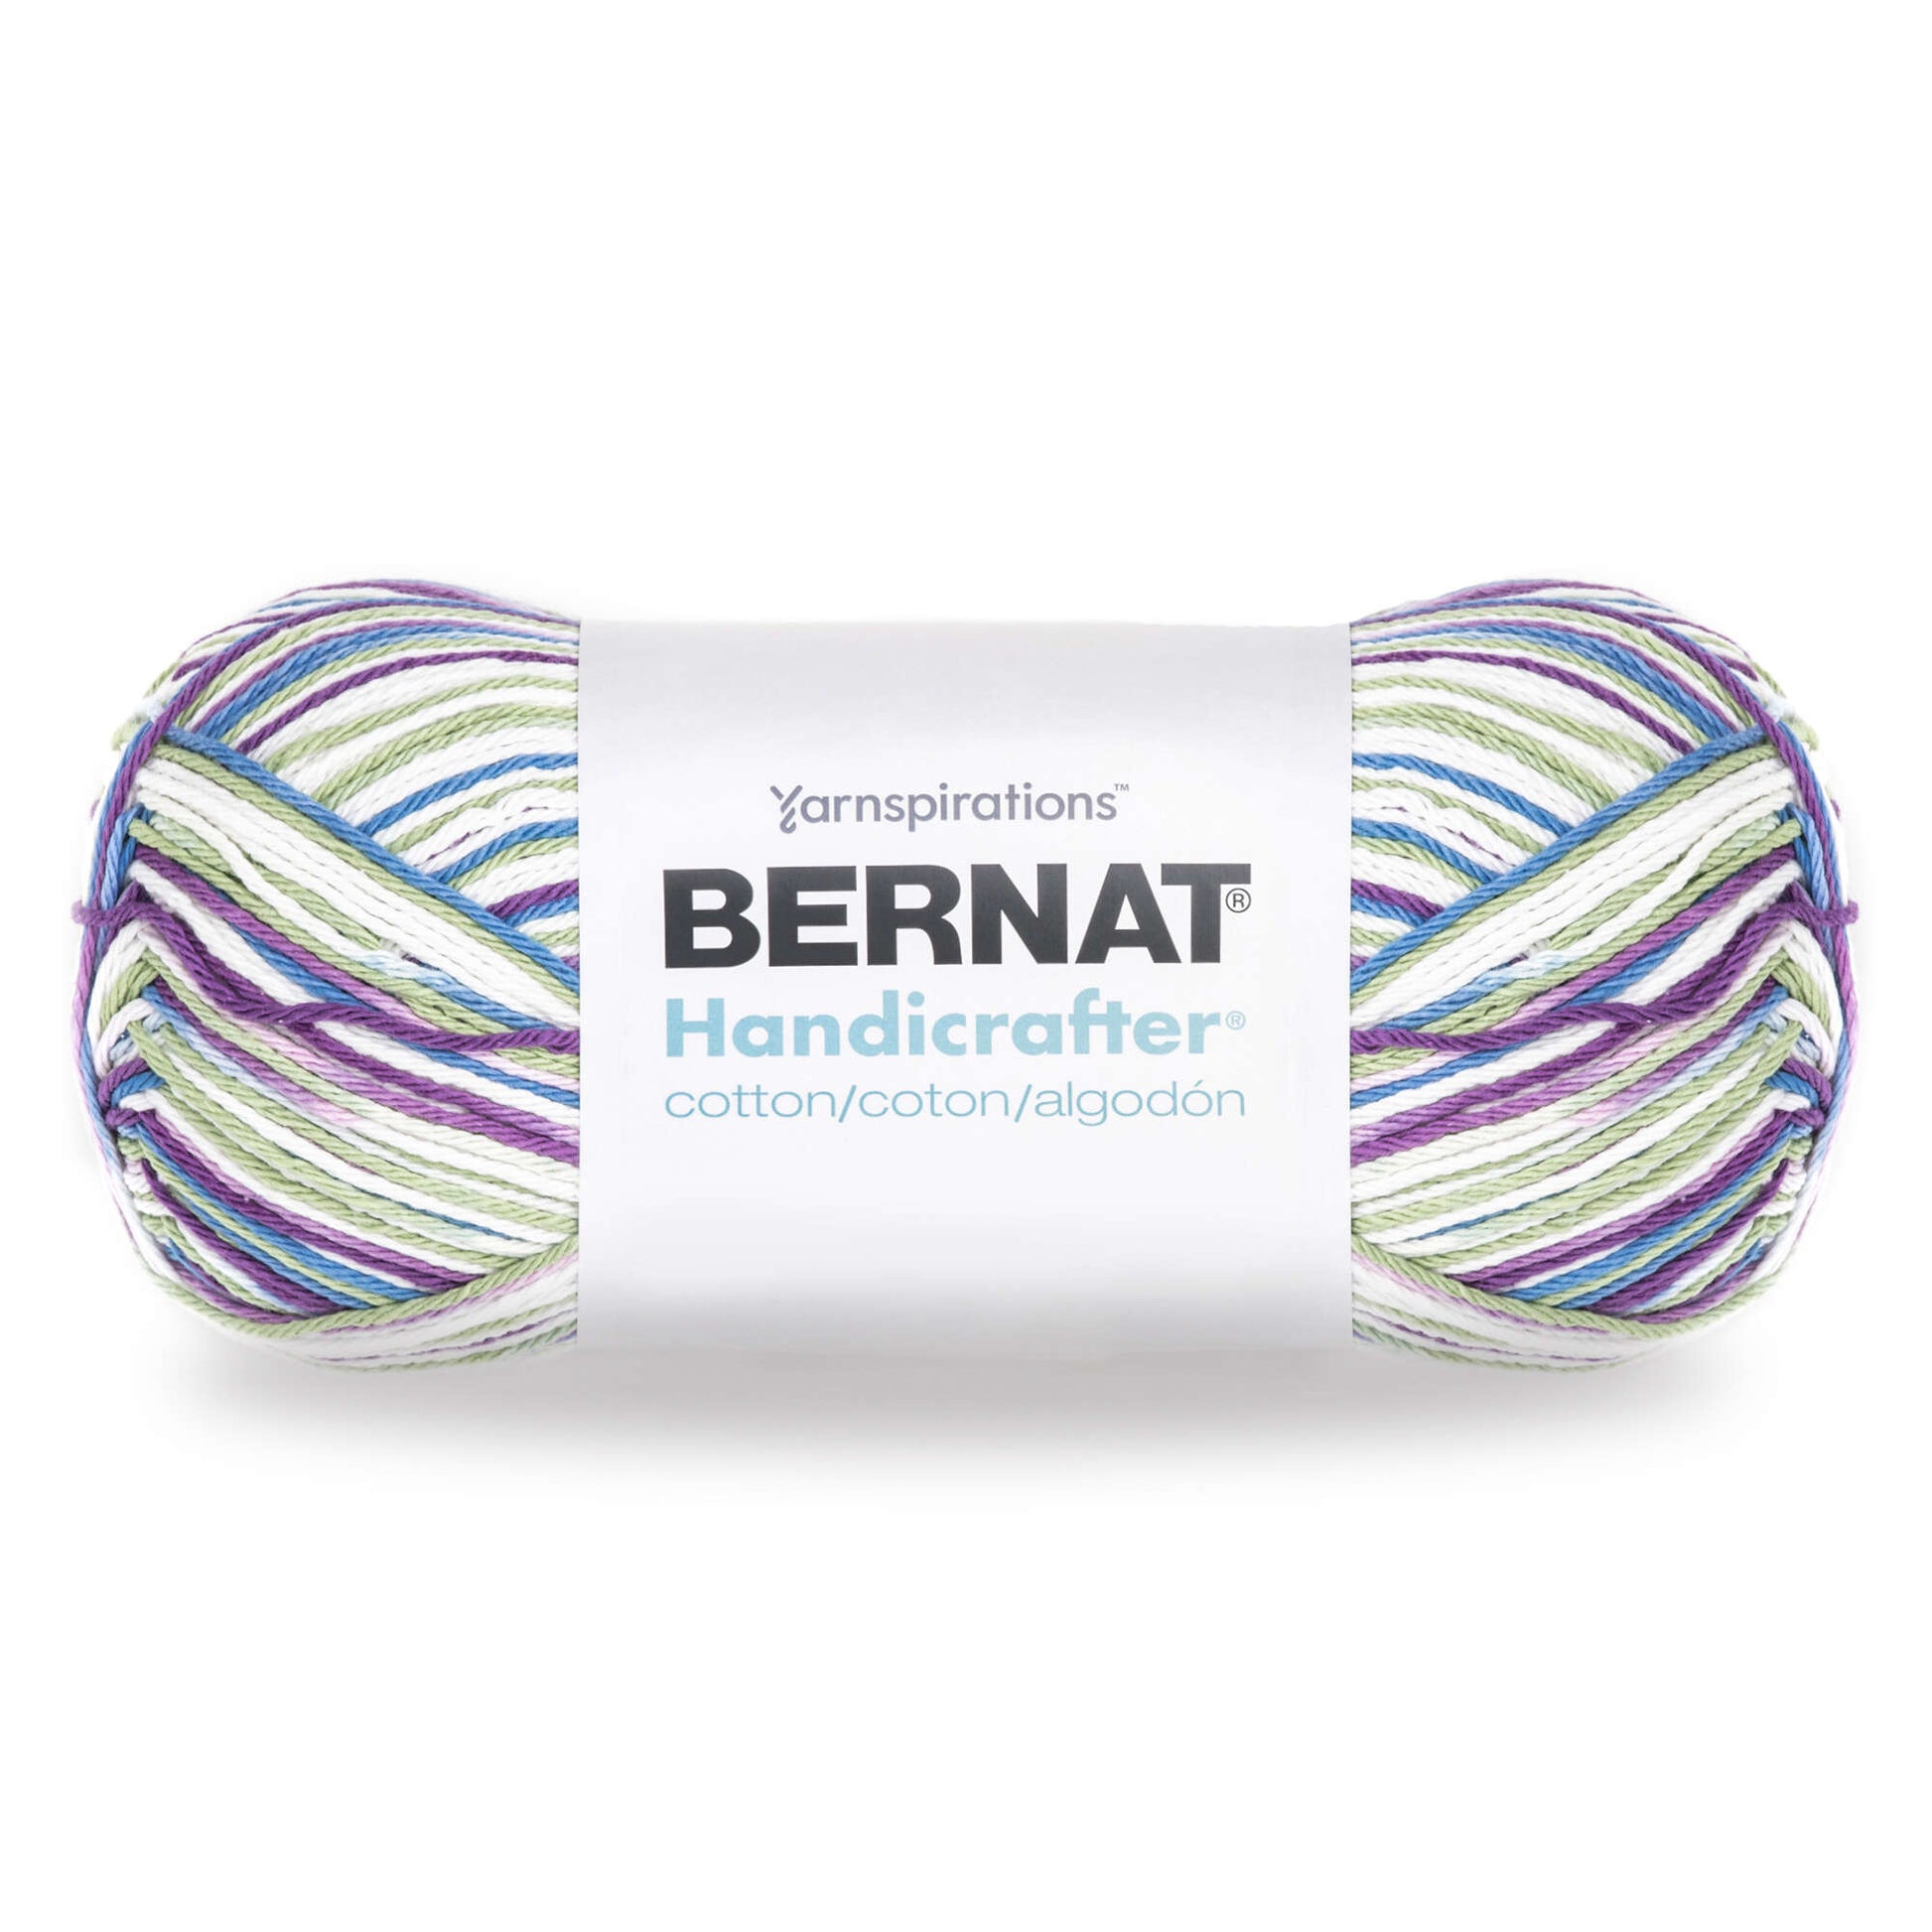 Bernat Handicrafter Cotton Big Ball Blue Camo Yarn - 2 Pack of